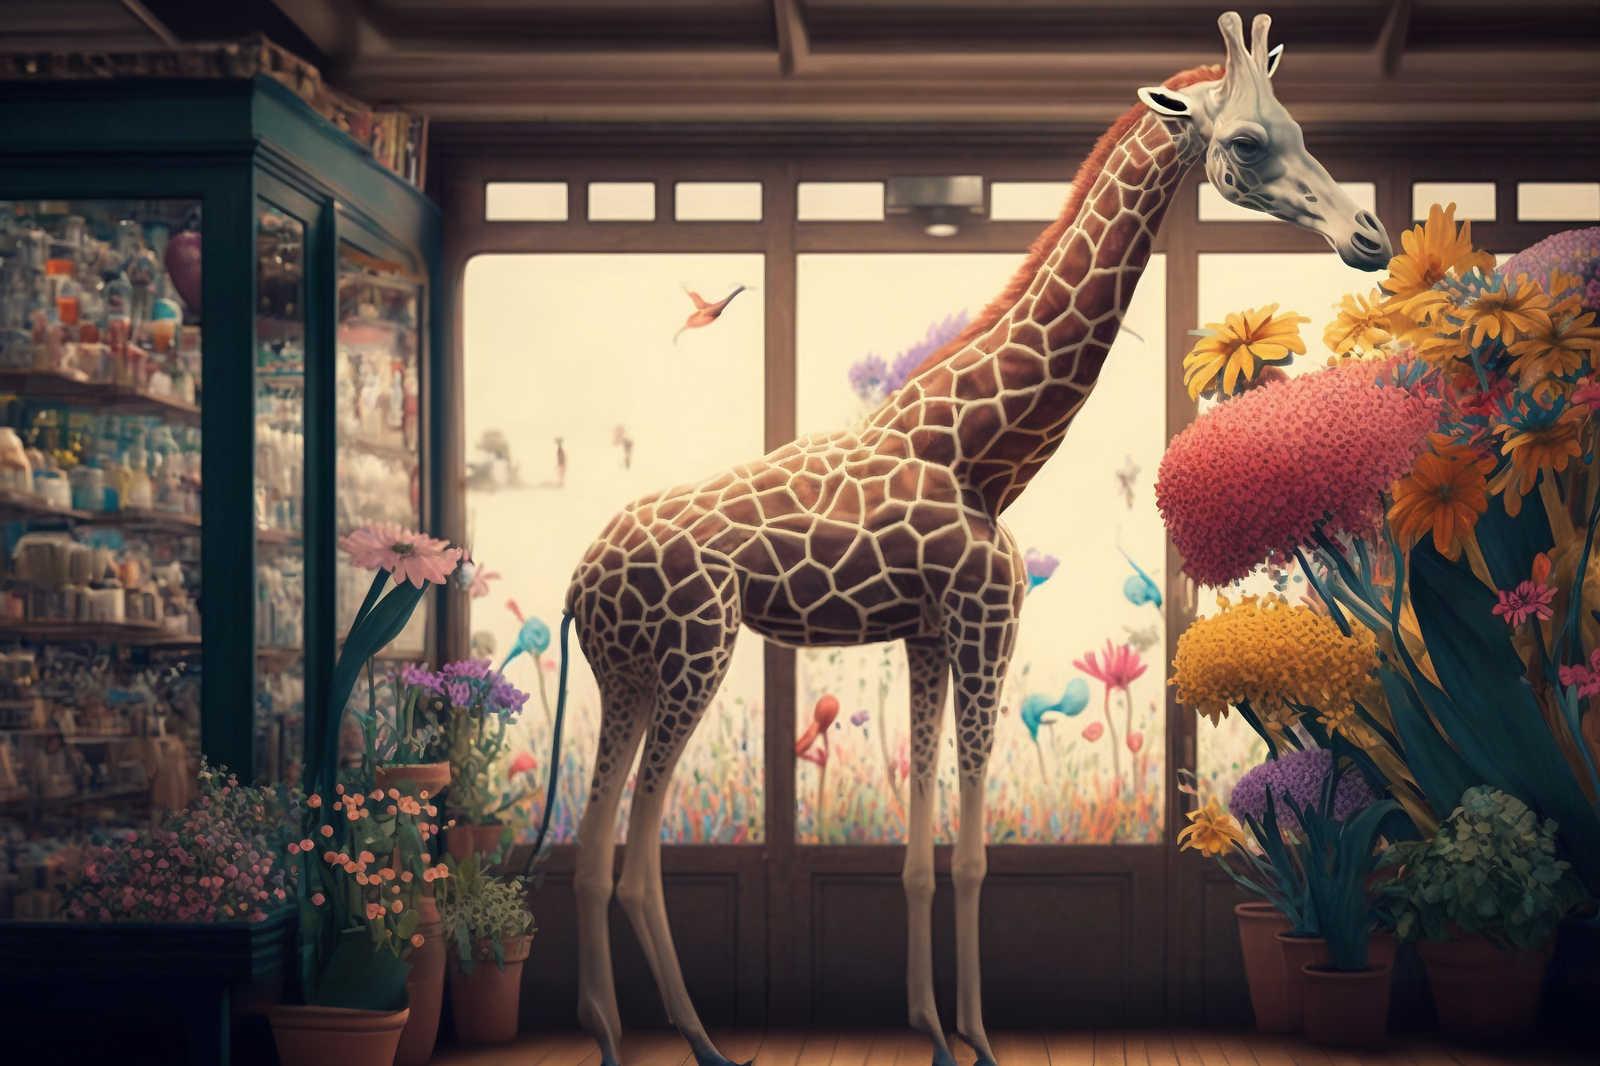             KI-Leinwandbild »flower giraffe« – 120 cm x 80 cm
        